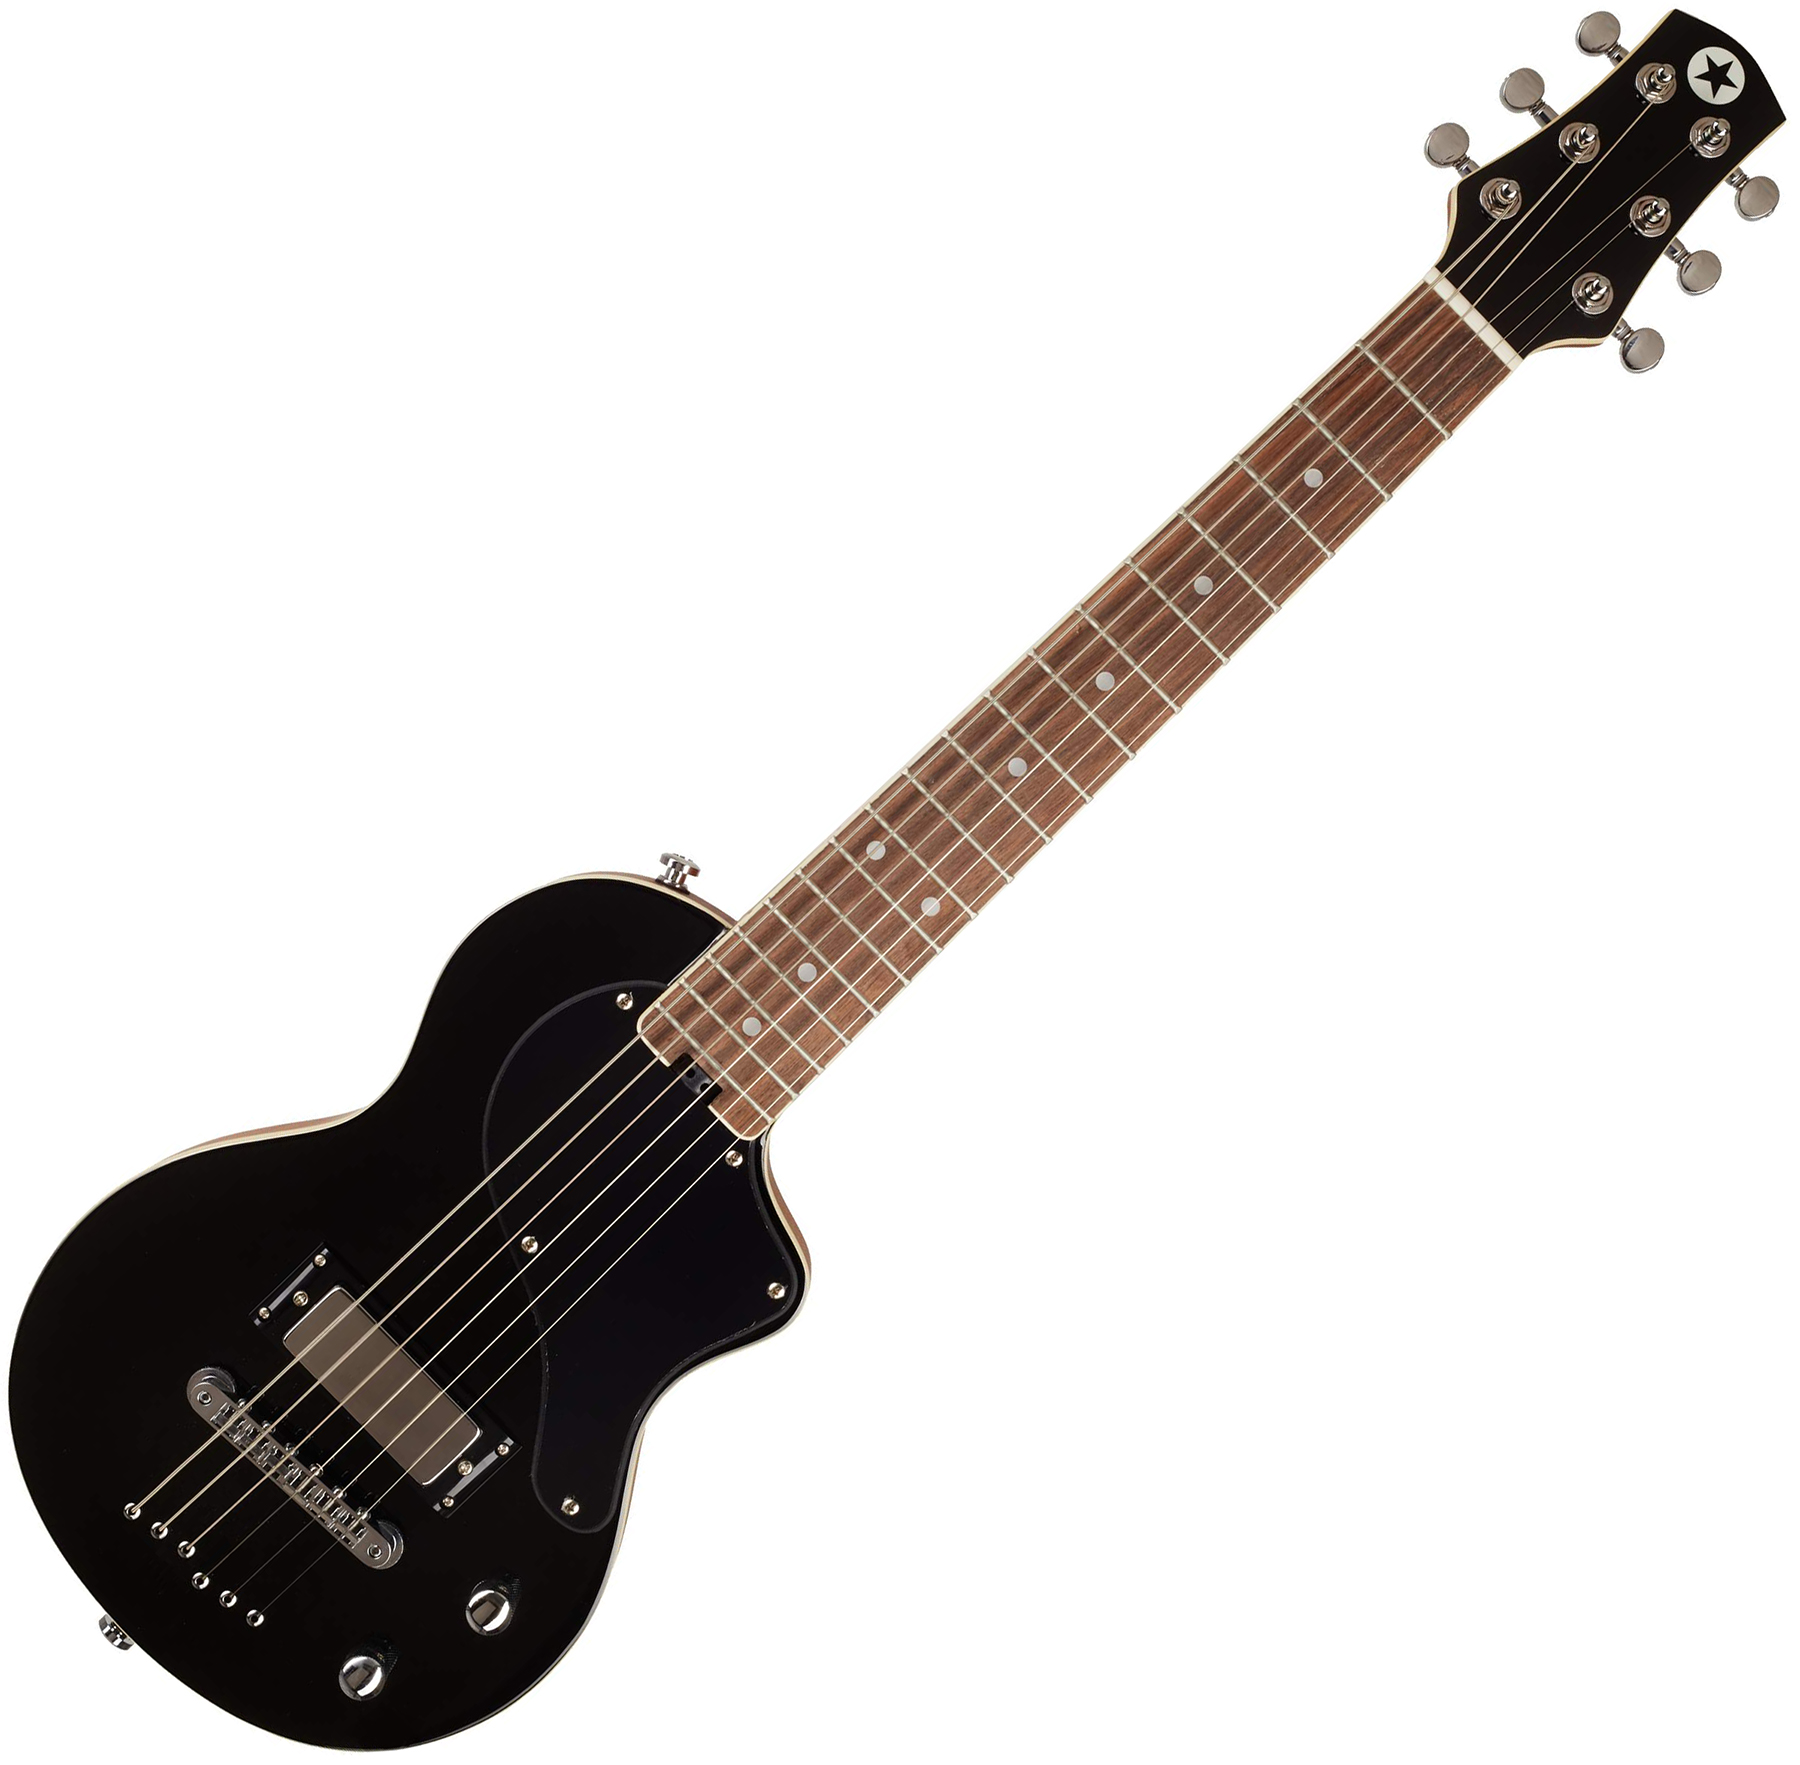 Blackstar Carry-on Travel Guitar Standard Pack +amplug2 Fly +housse - Jet Black - Packs guitarra eléctrica - Variation 1